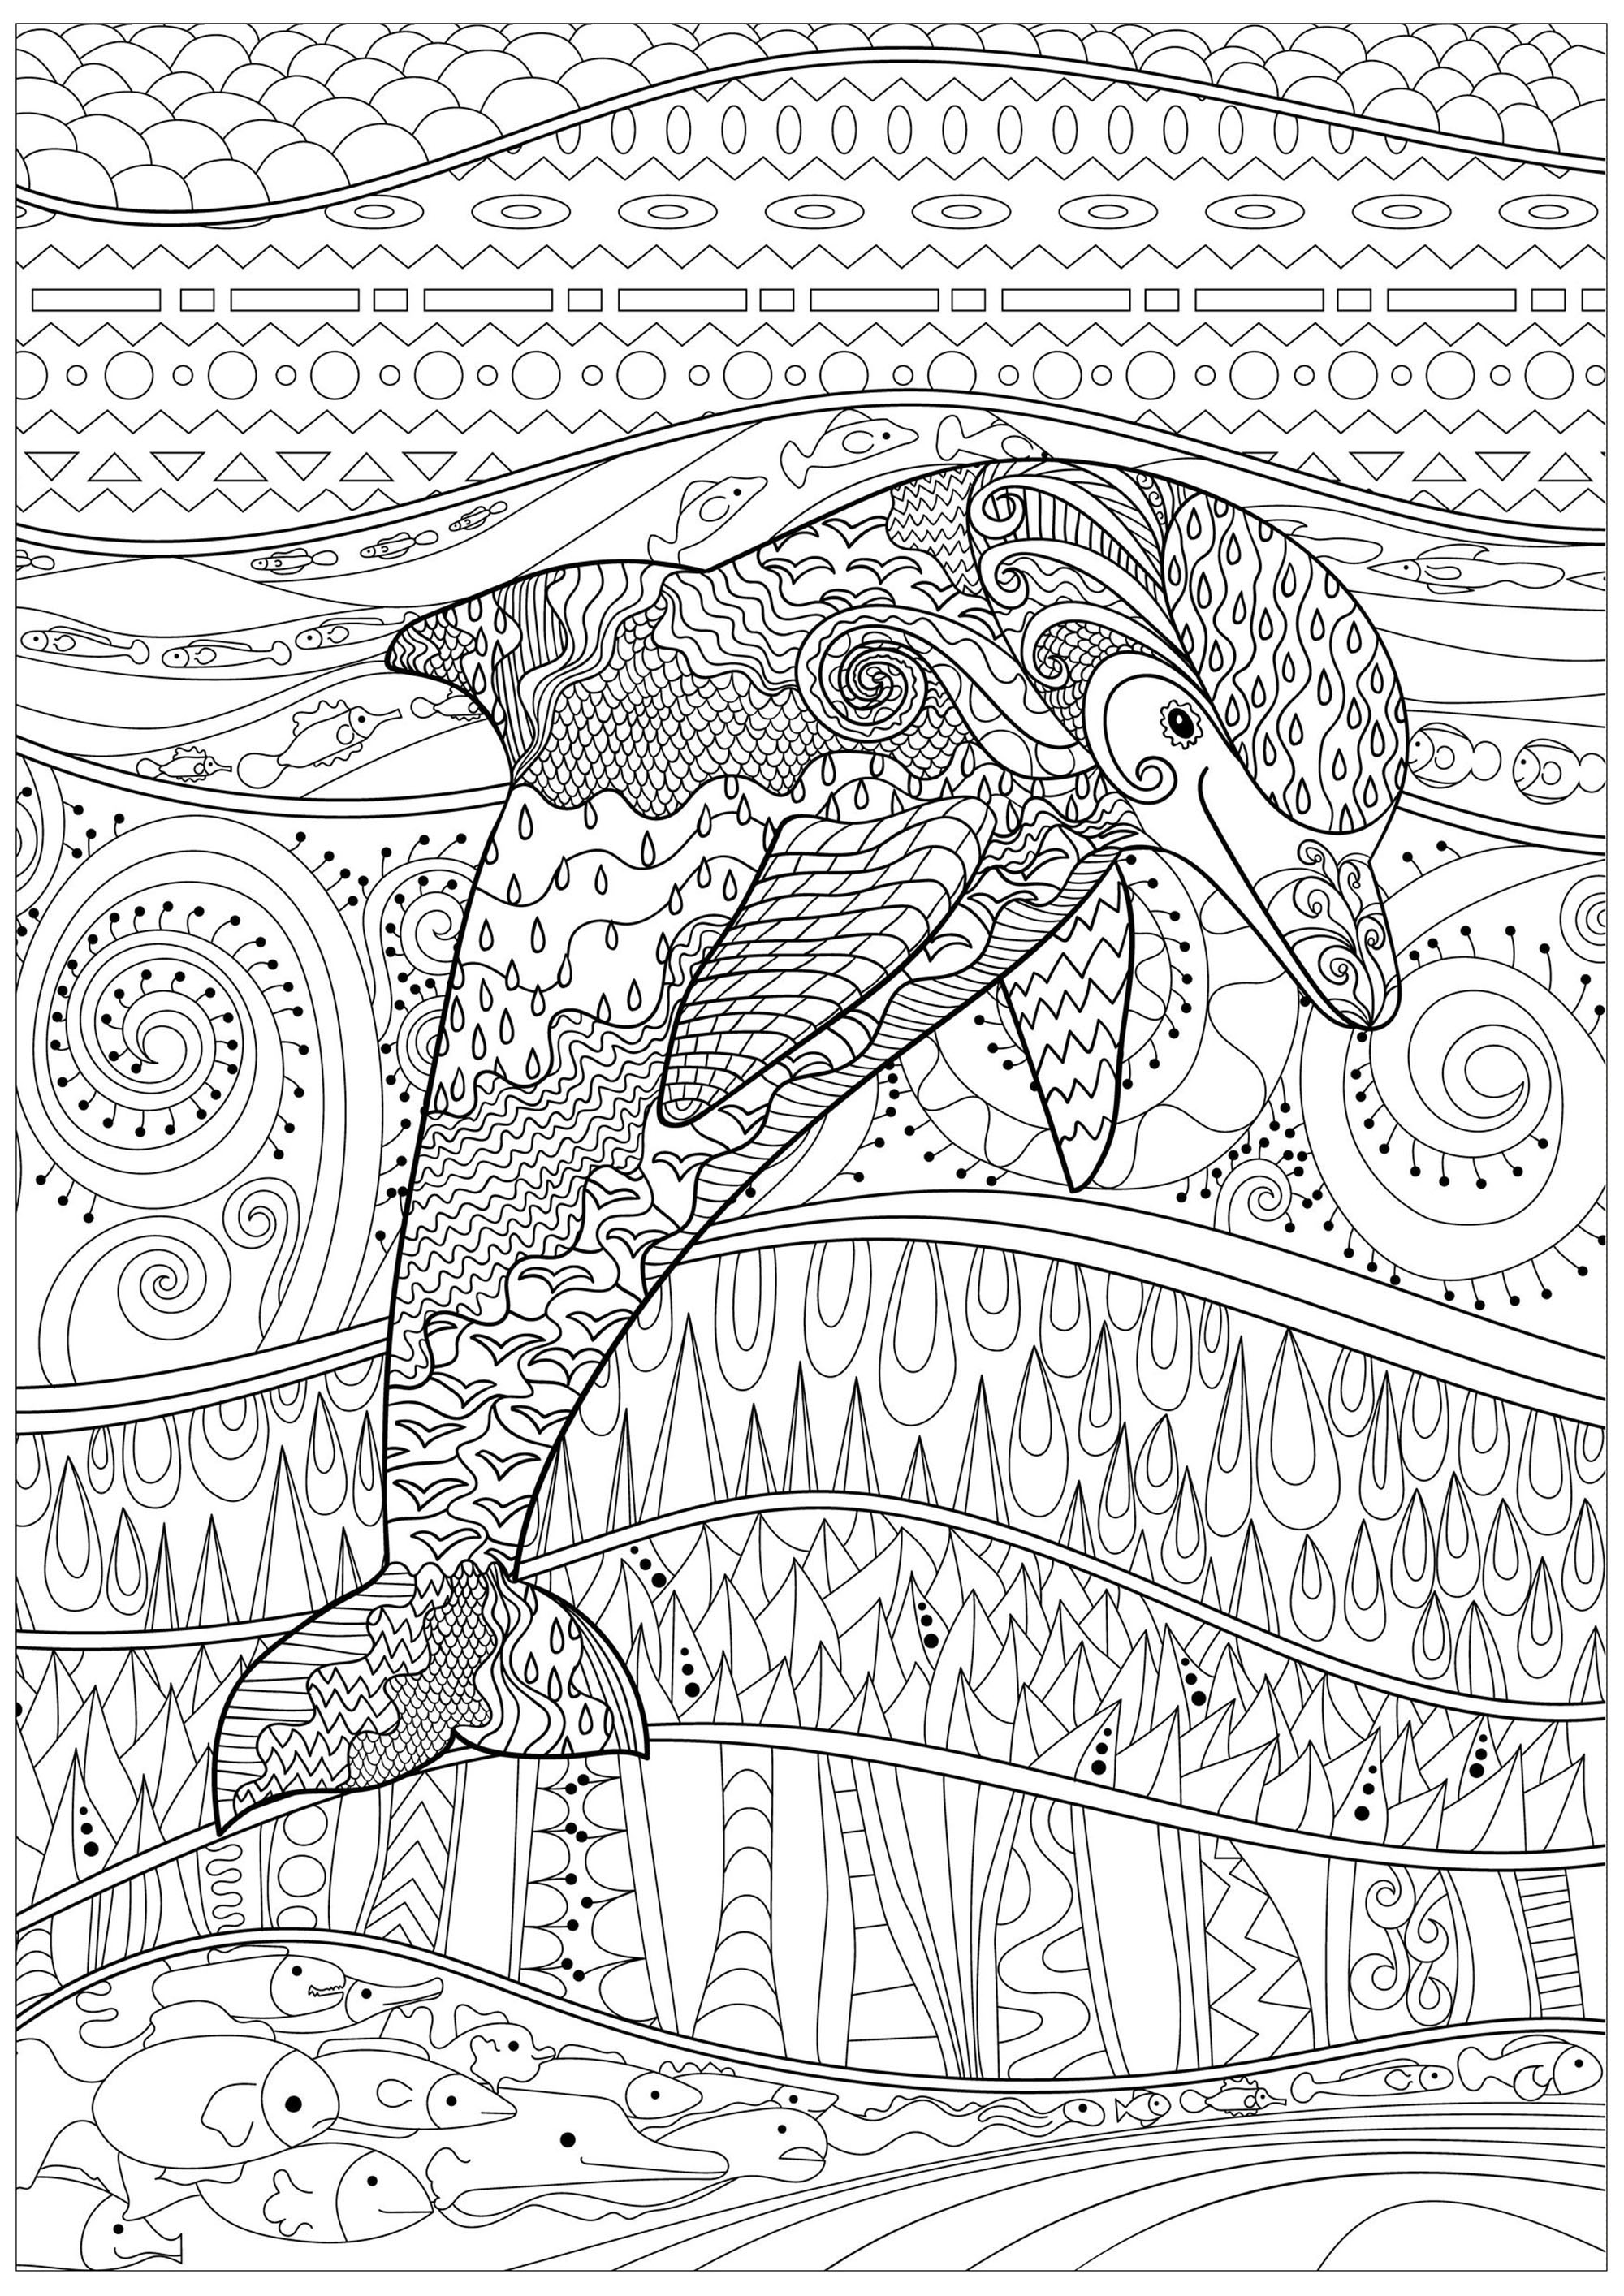 Golfinho num mar calmo, com peixes e padrões encantadores, abstractos e complexos, dentro e fora do seu corpo, Fonte : 123rf   Artista : Anna Lezhepekova